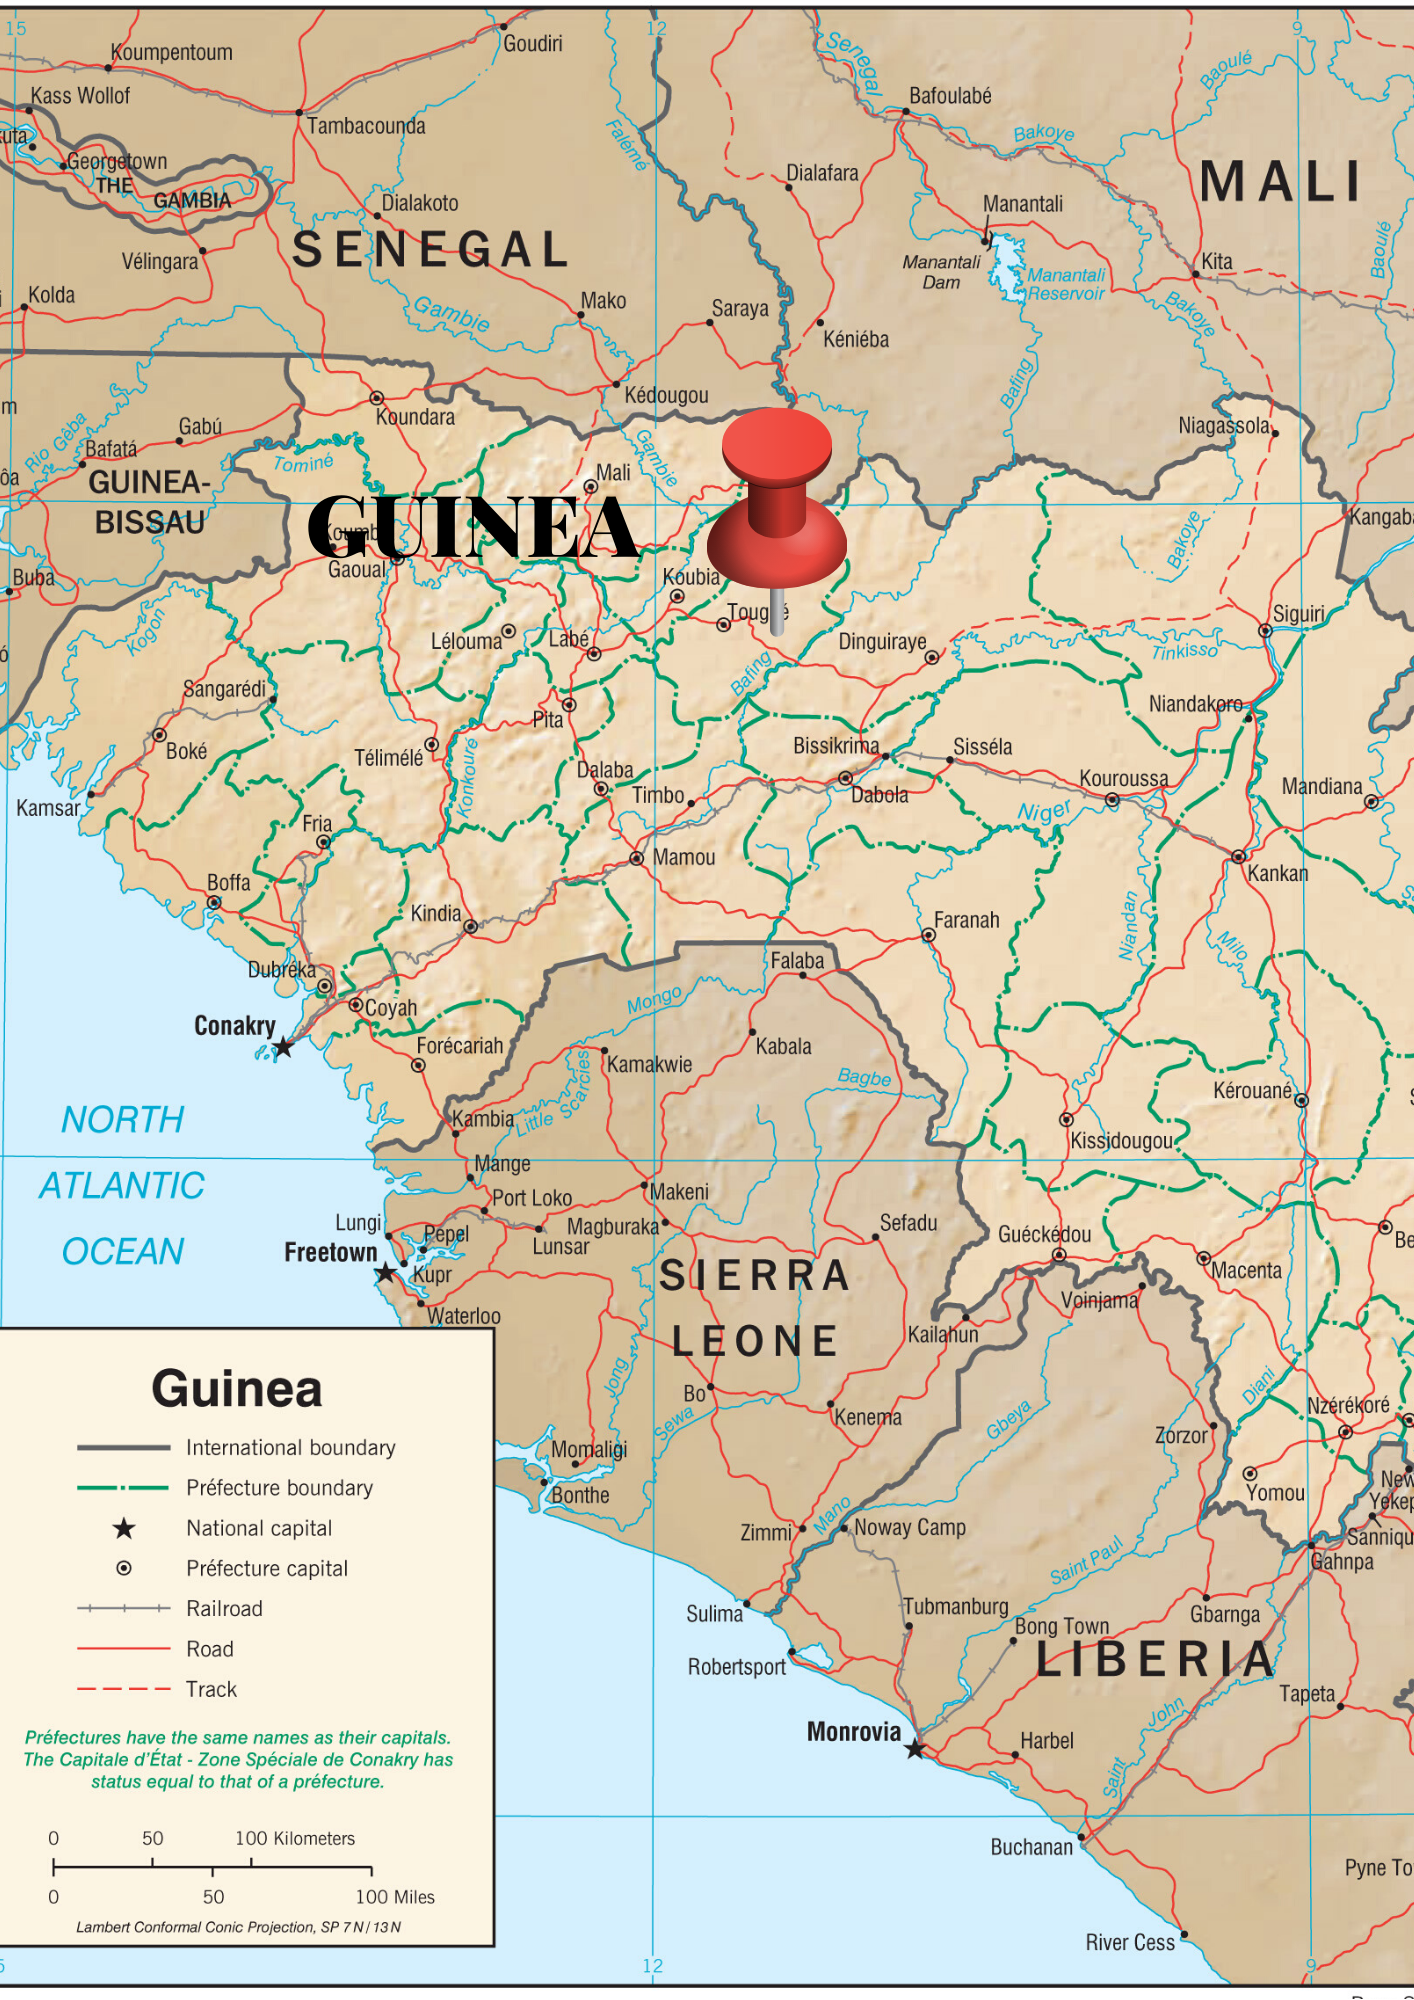 conakry_mapa_lib-3.png